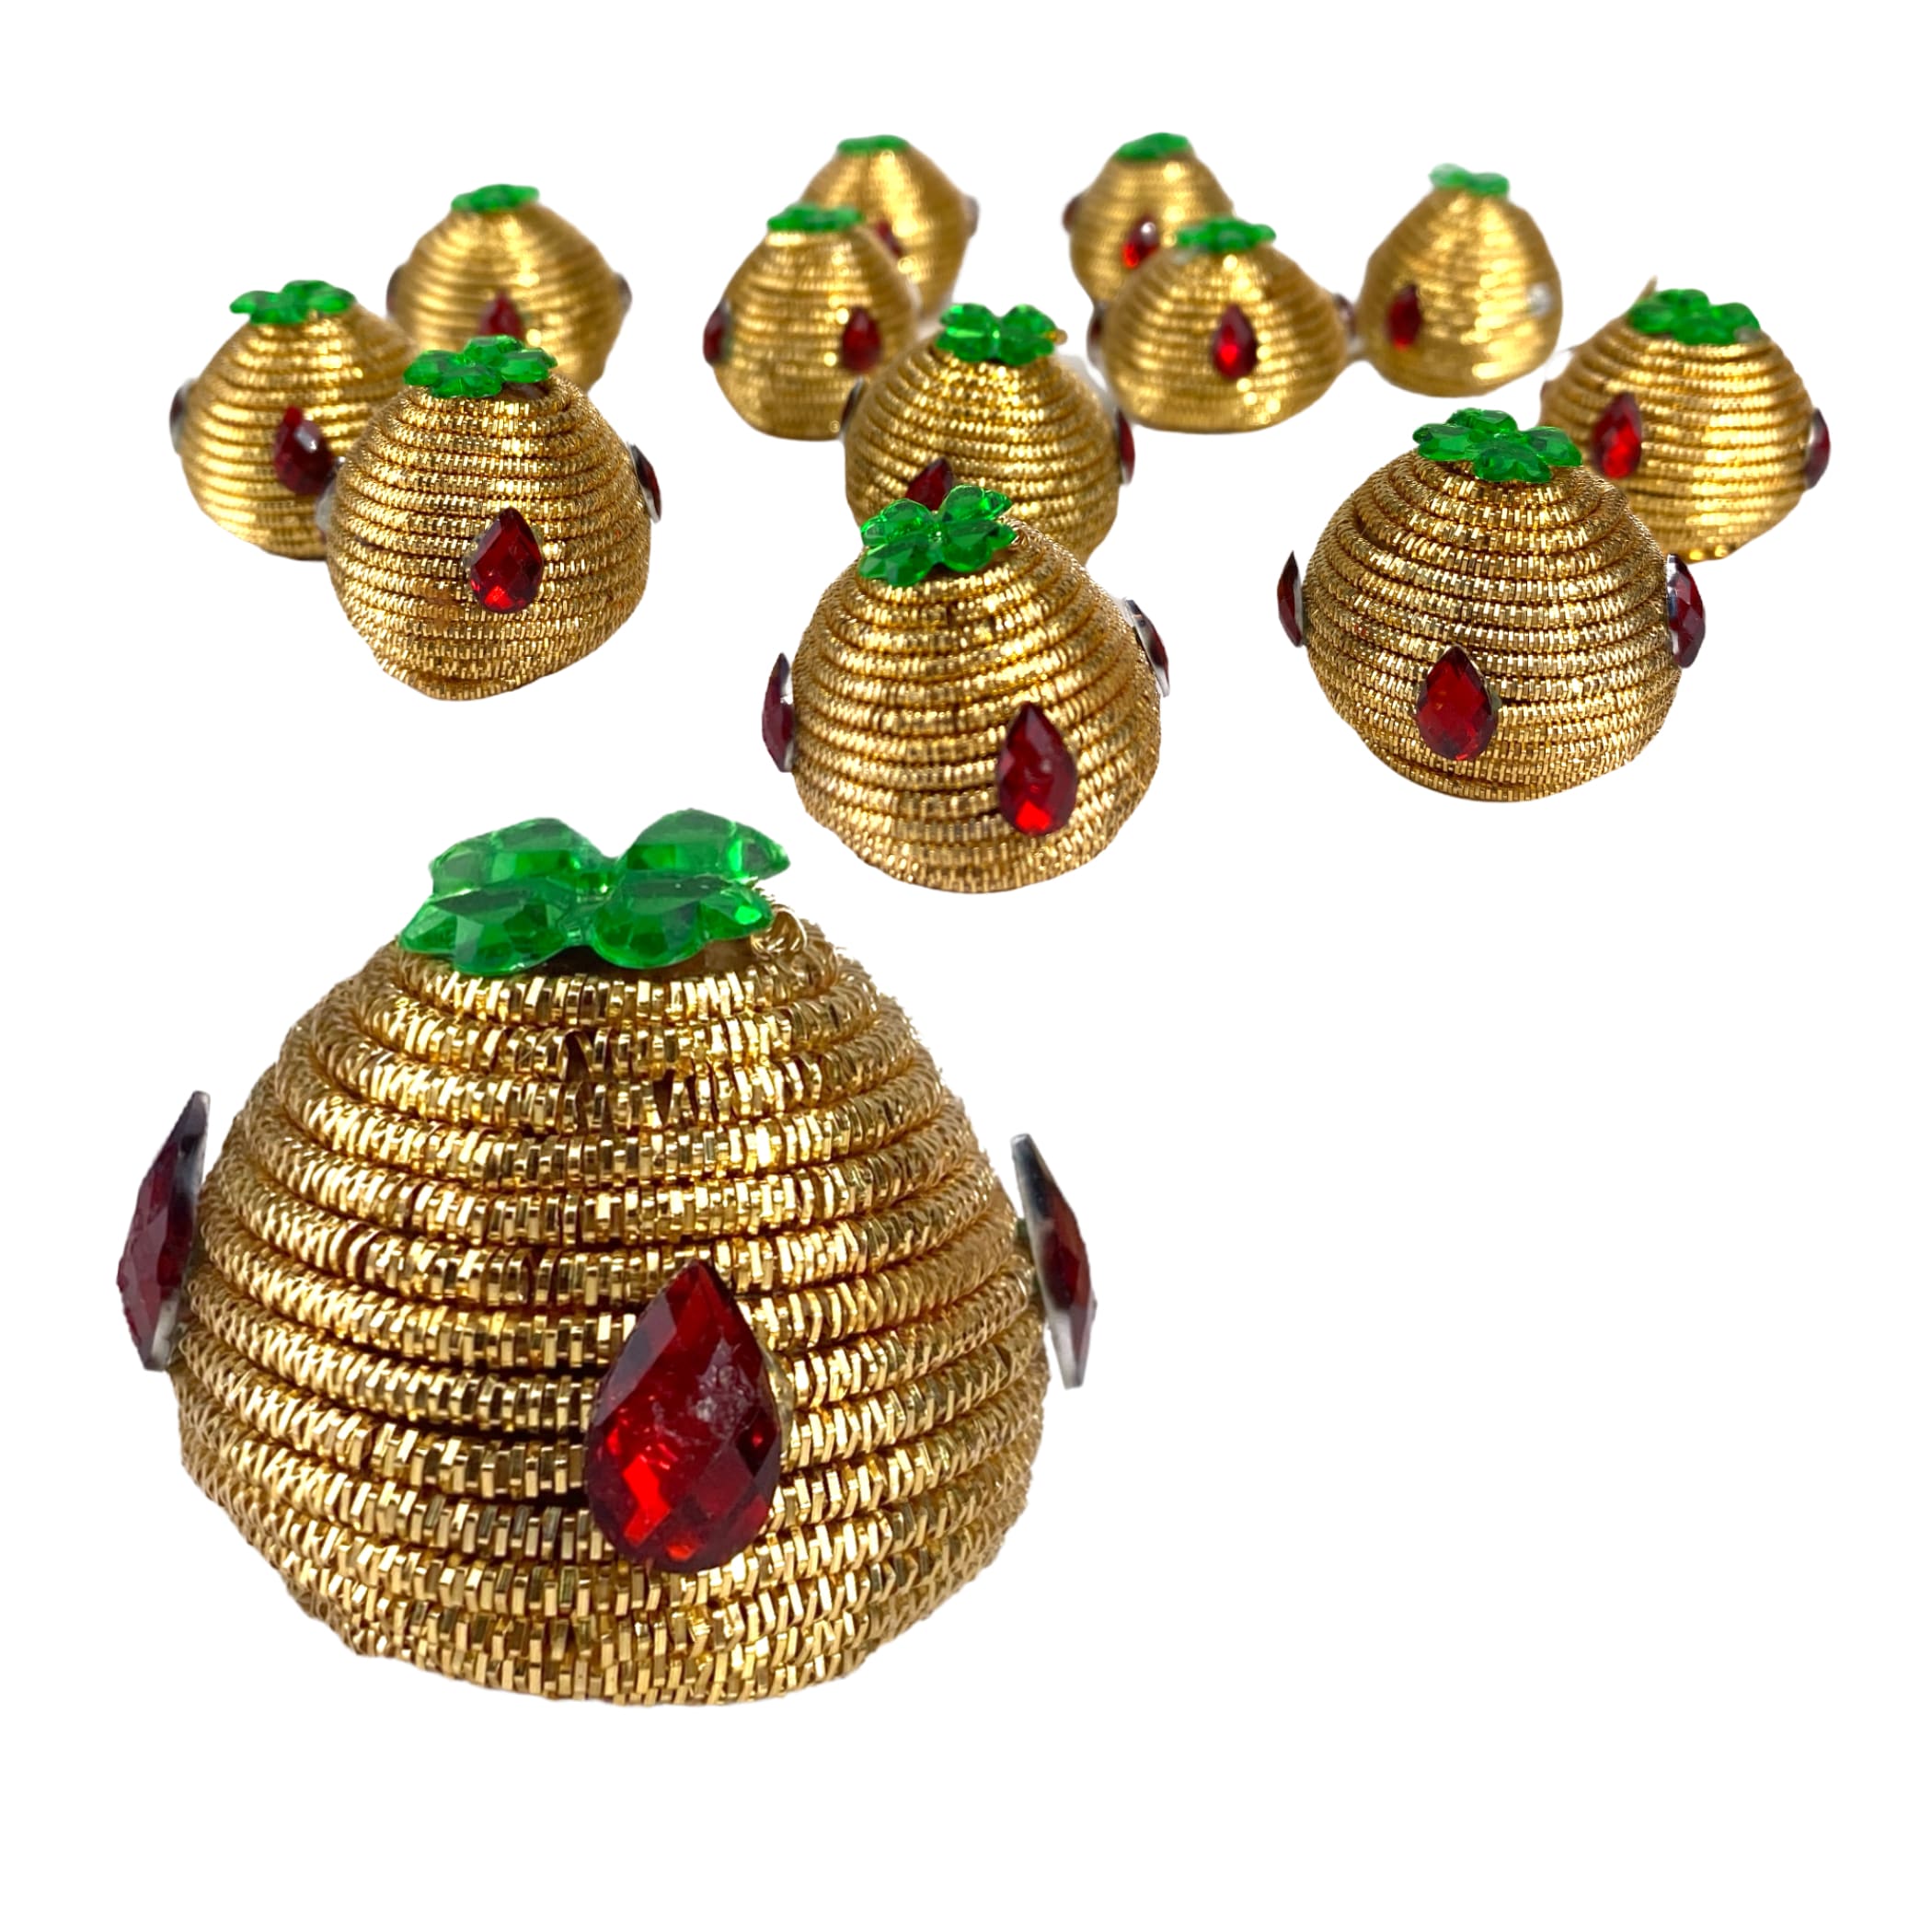 Designer supari for puja betelnut pooja decorative indian